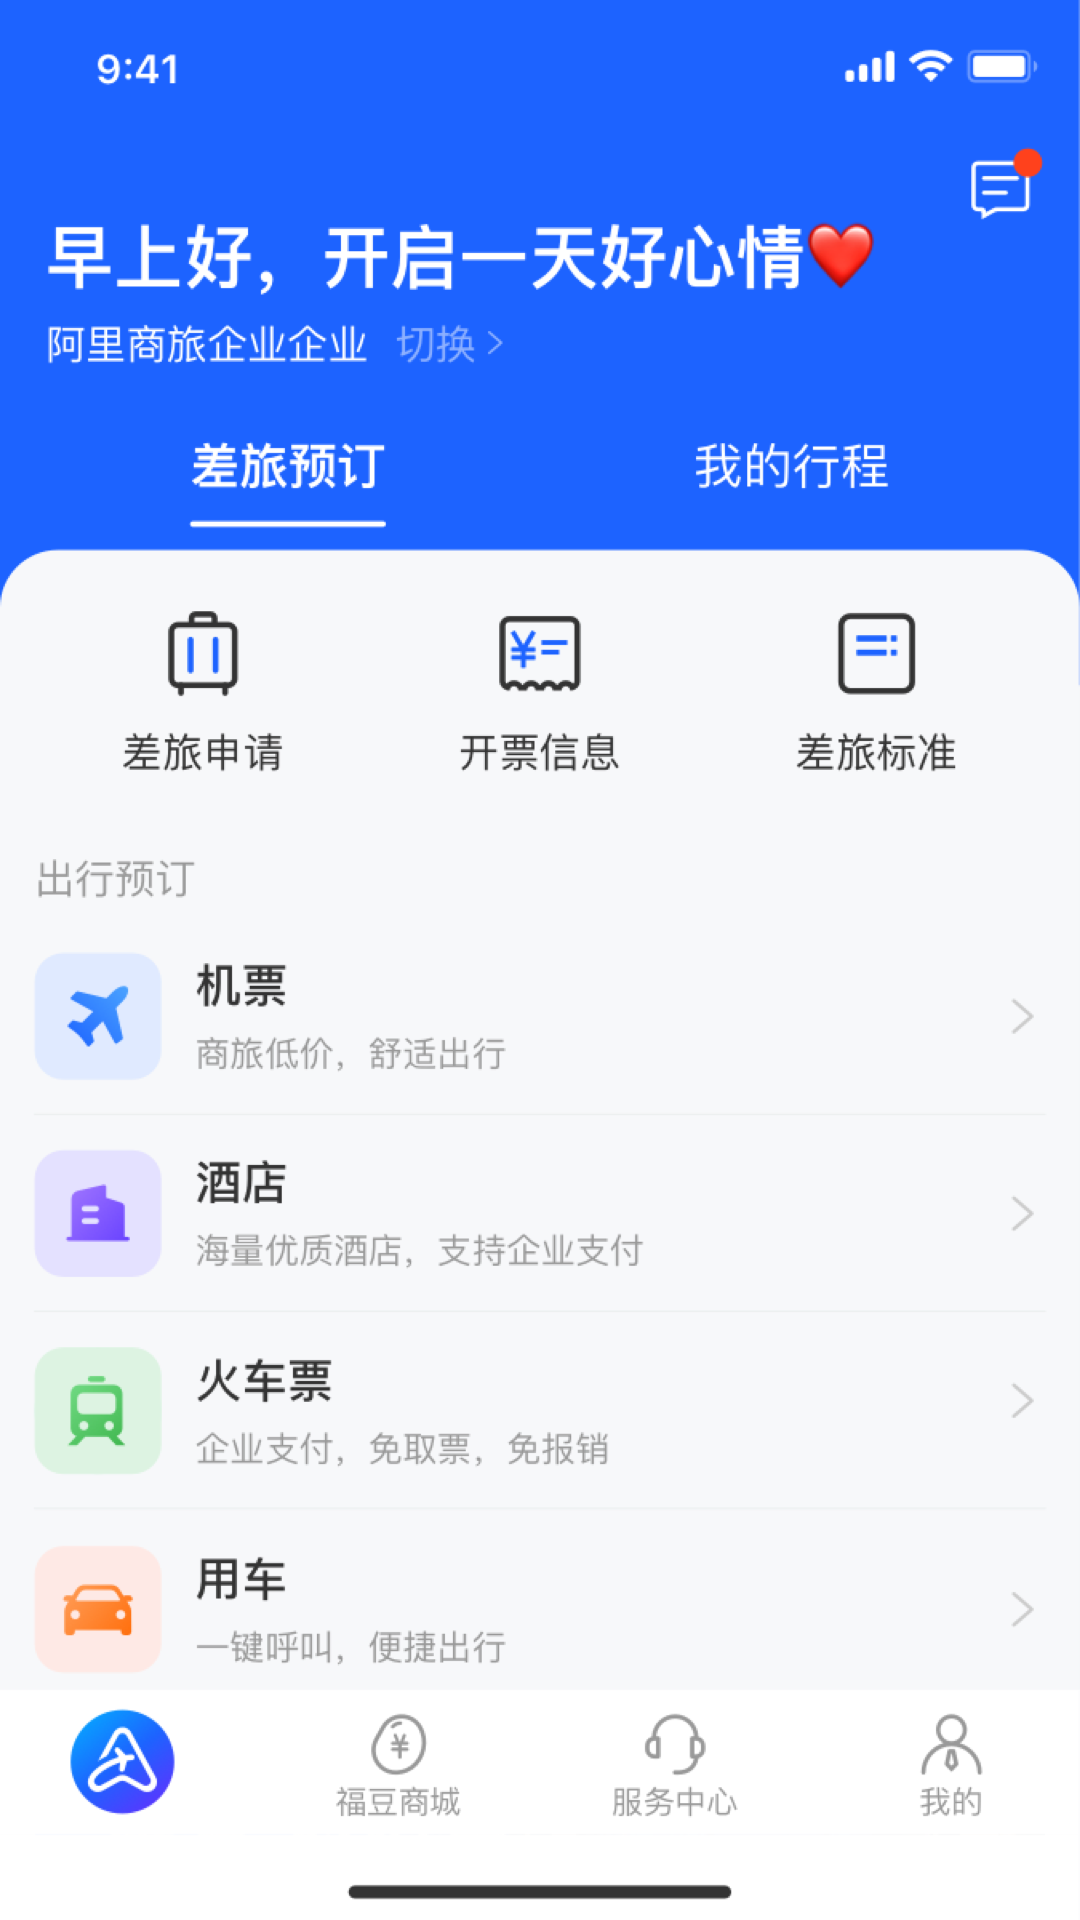 阿里商旅app 1.3.0.1021.4.0.102